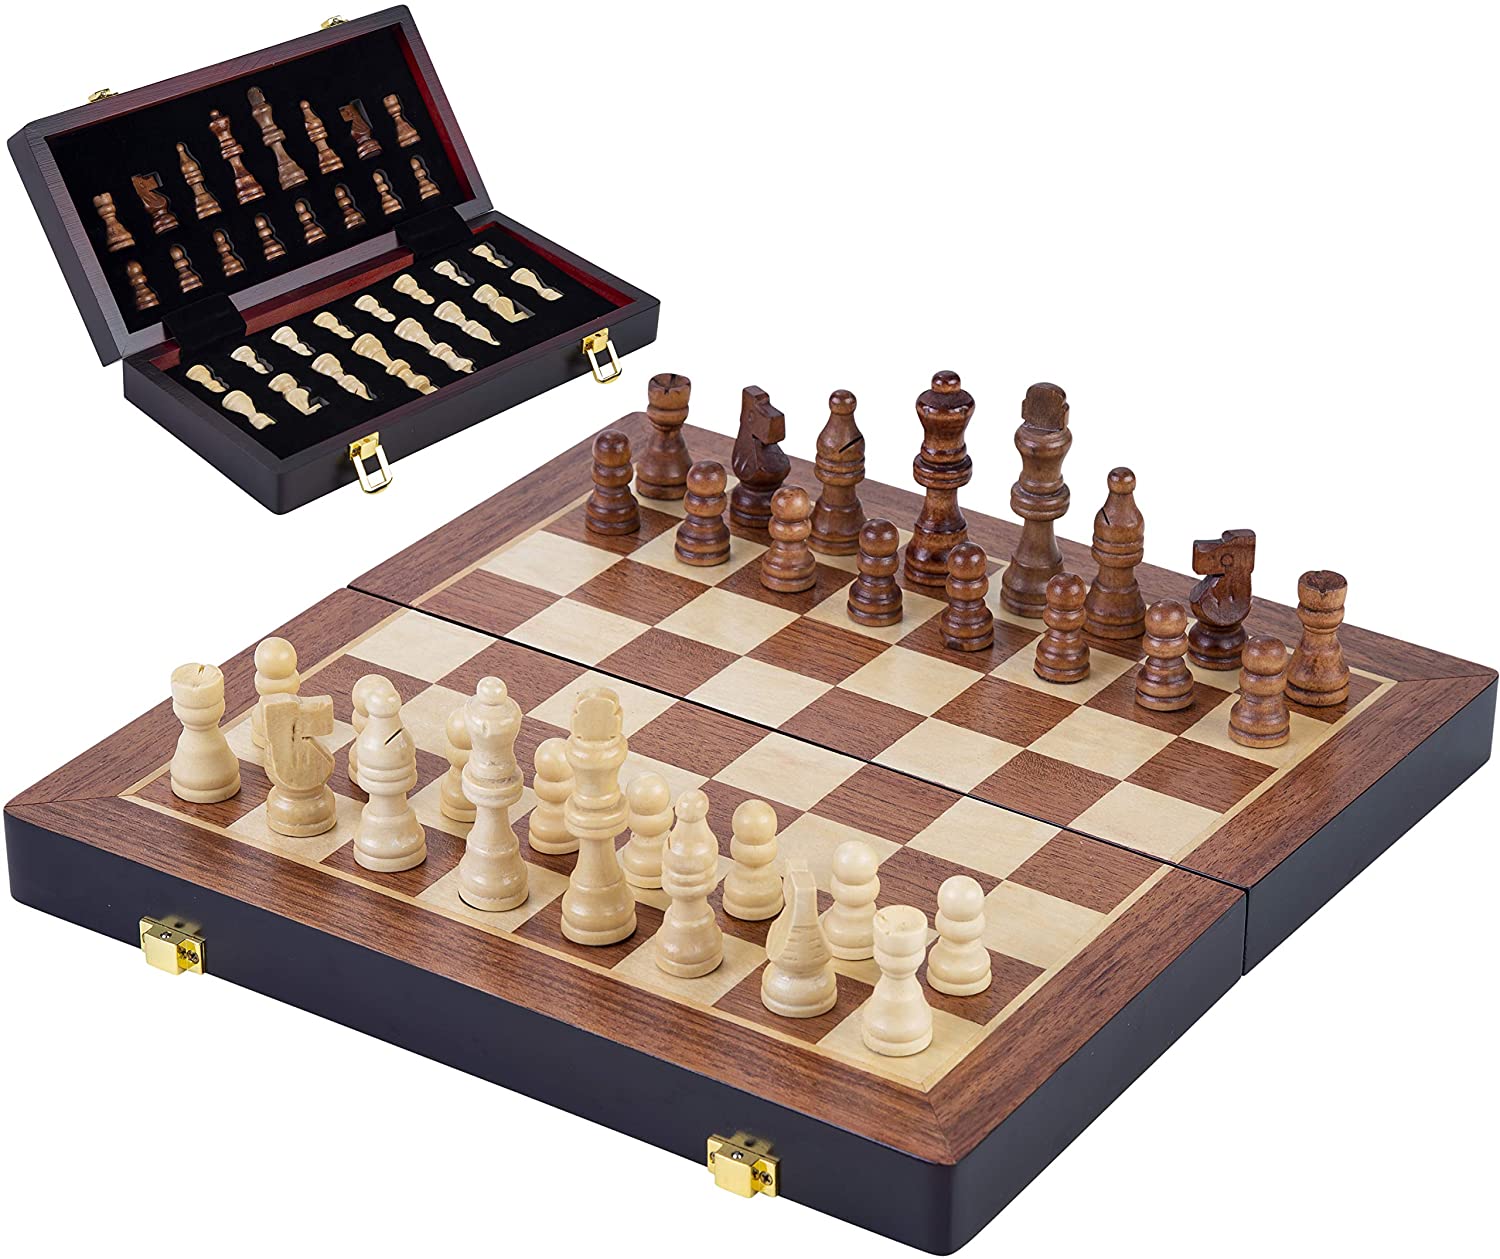 13 "schachbrett Holz Magnetischen Schach set Palisander Top Qualität mit